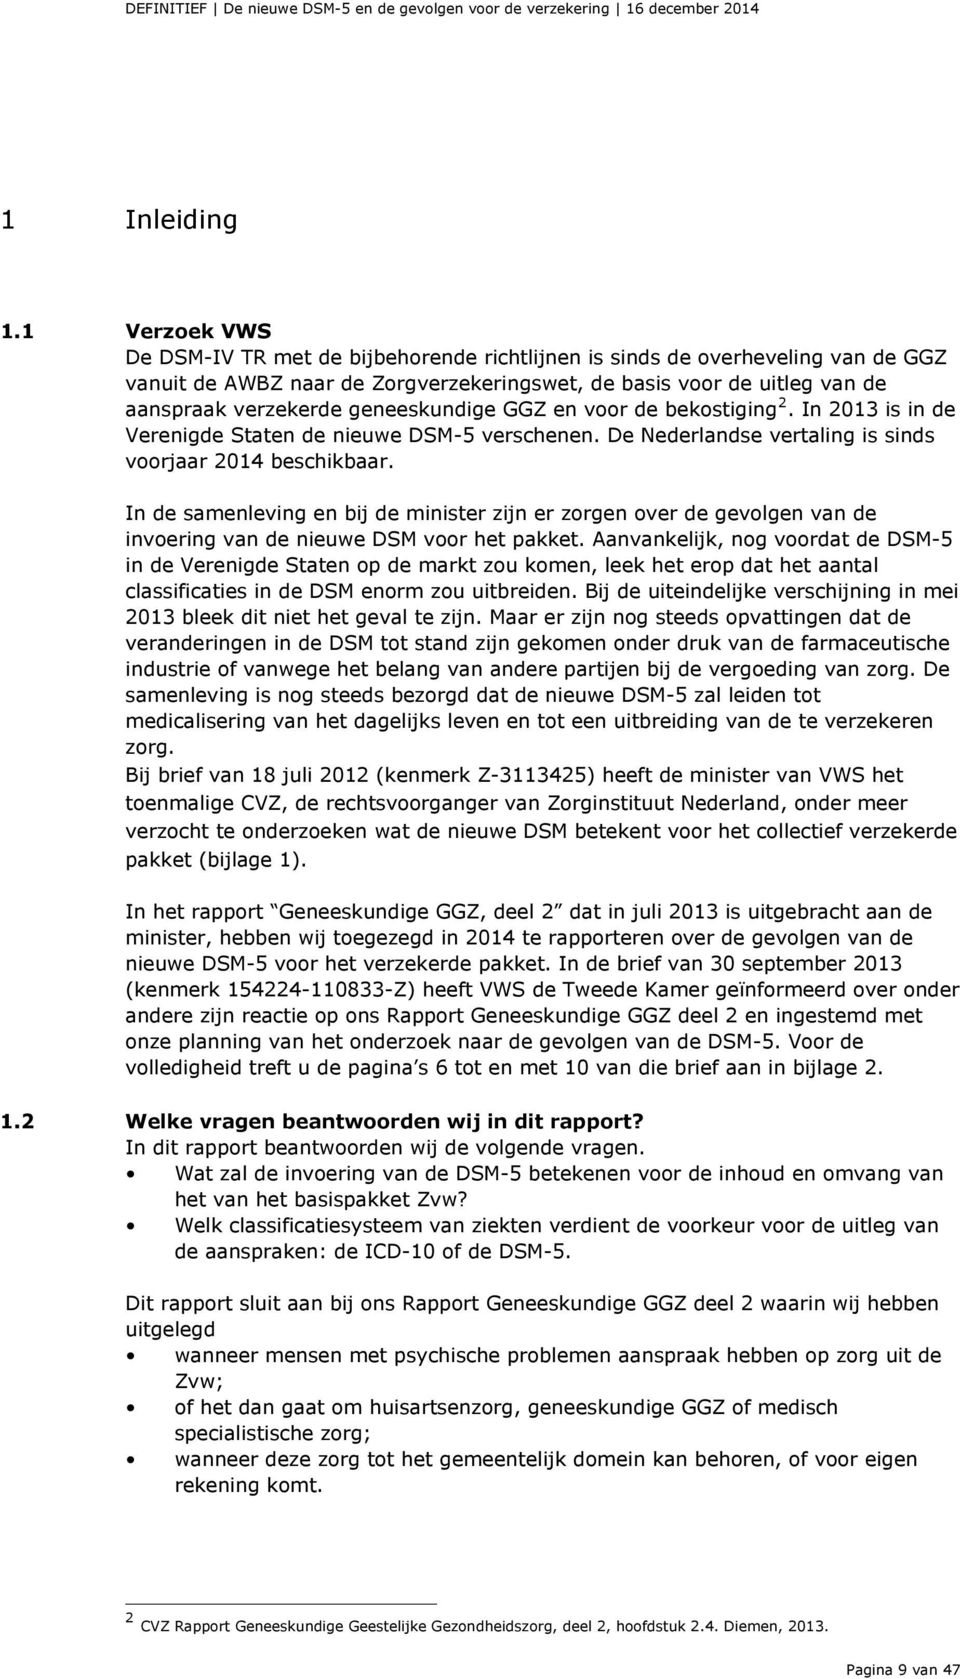 geneeskundige GGZ en voor de bekostiging 2. In 2013 is in de Verenigde Staten de nieuwe DSM-5 verschenen. De Nederlandse vertaling is sinds voorjaar 2014 beschikbaar.